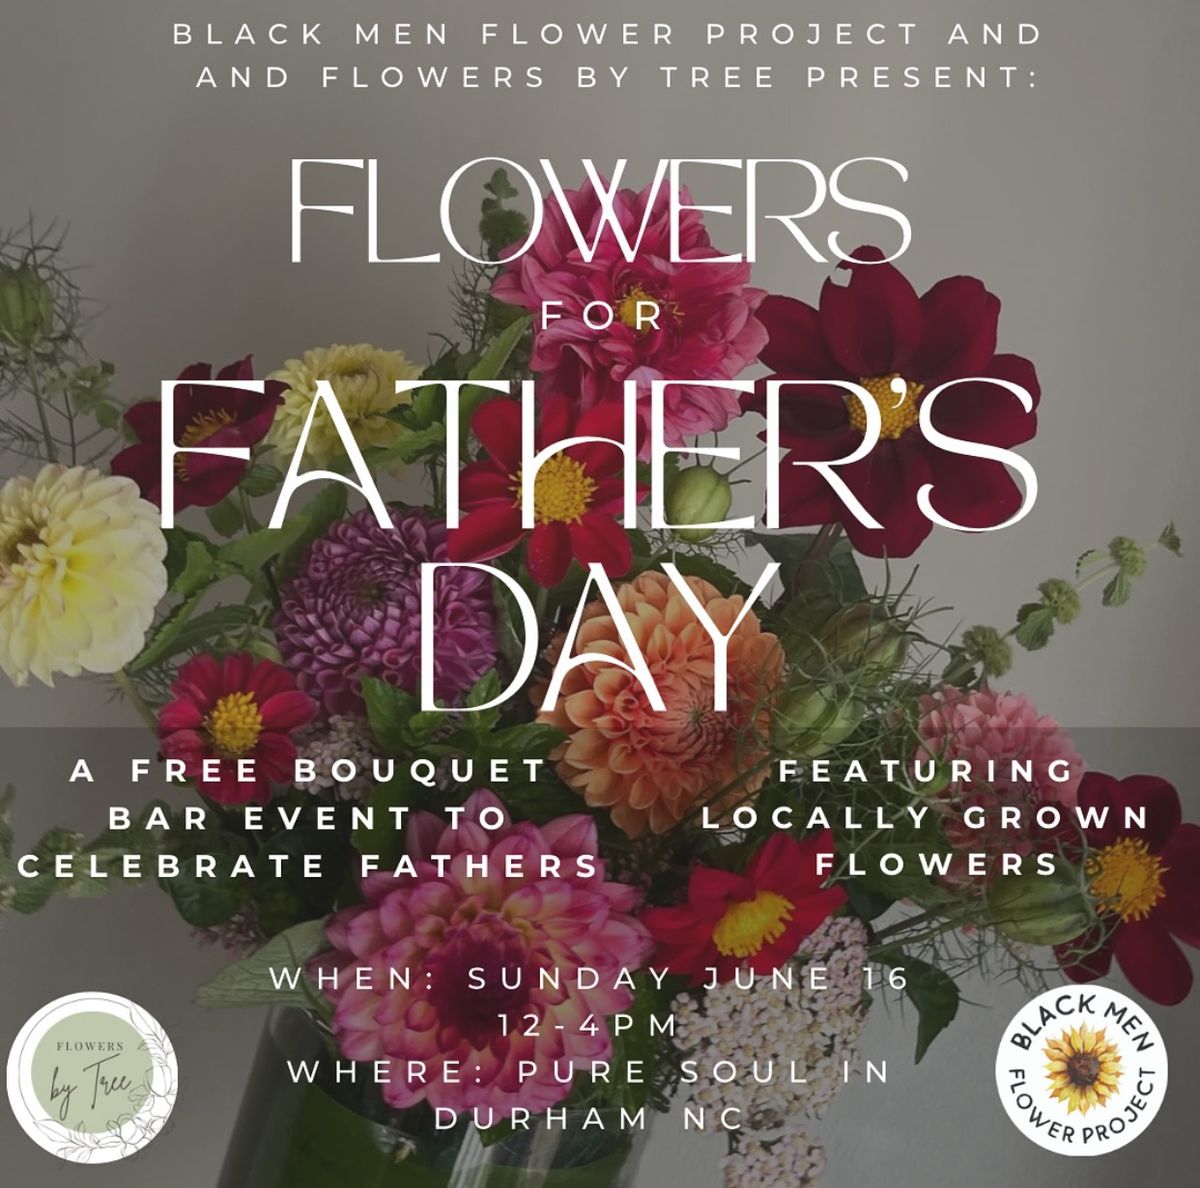 Build a Free Bouquet x Black Men Flower Project